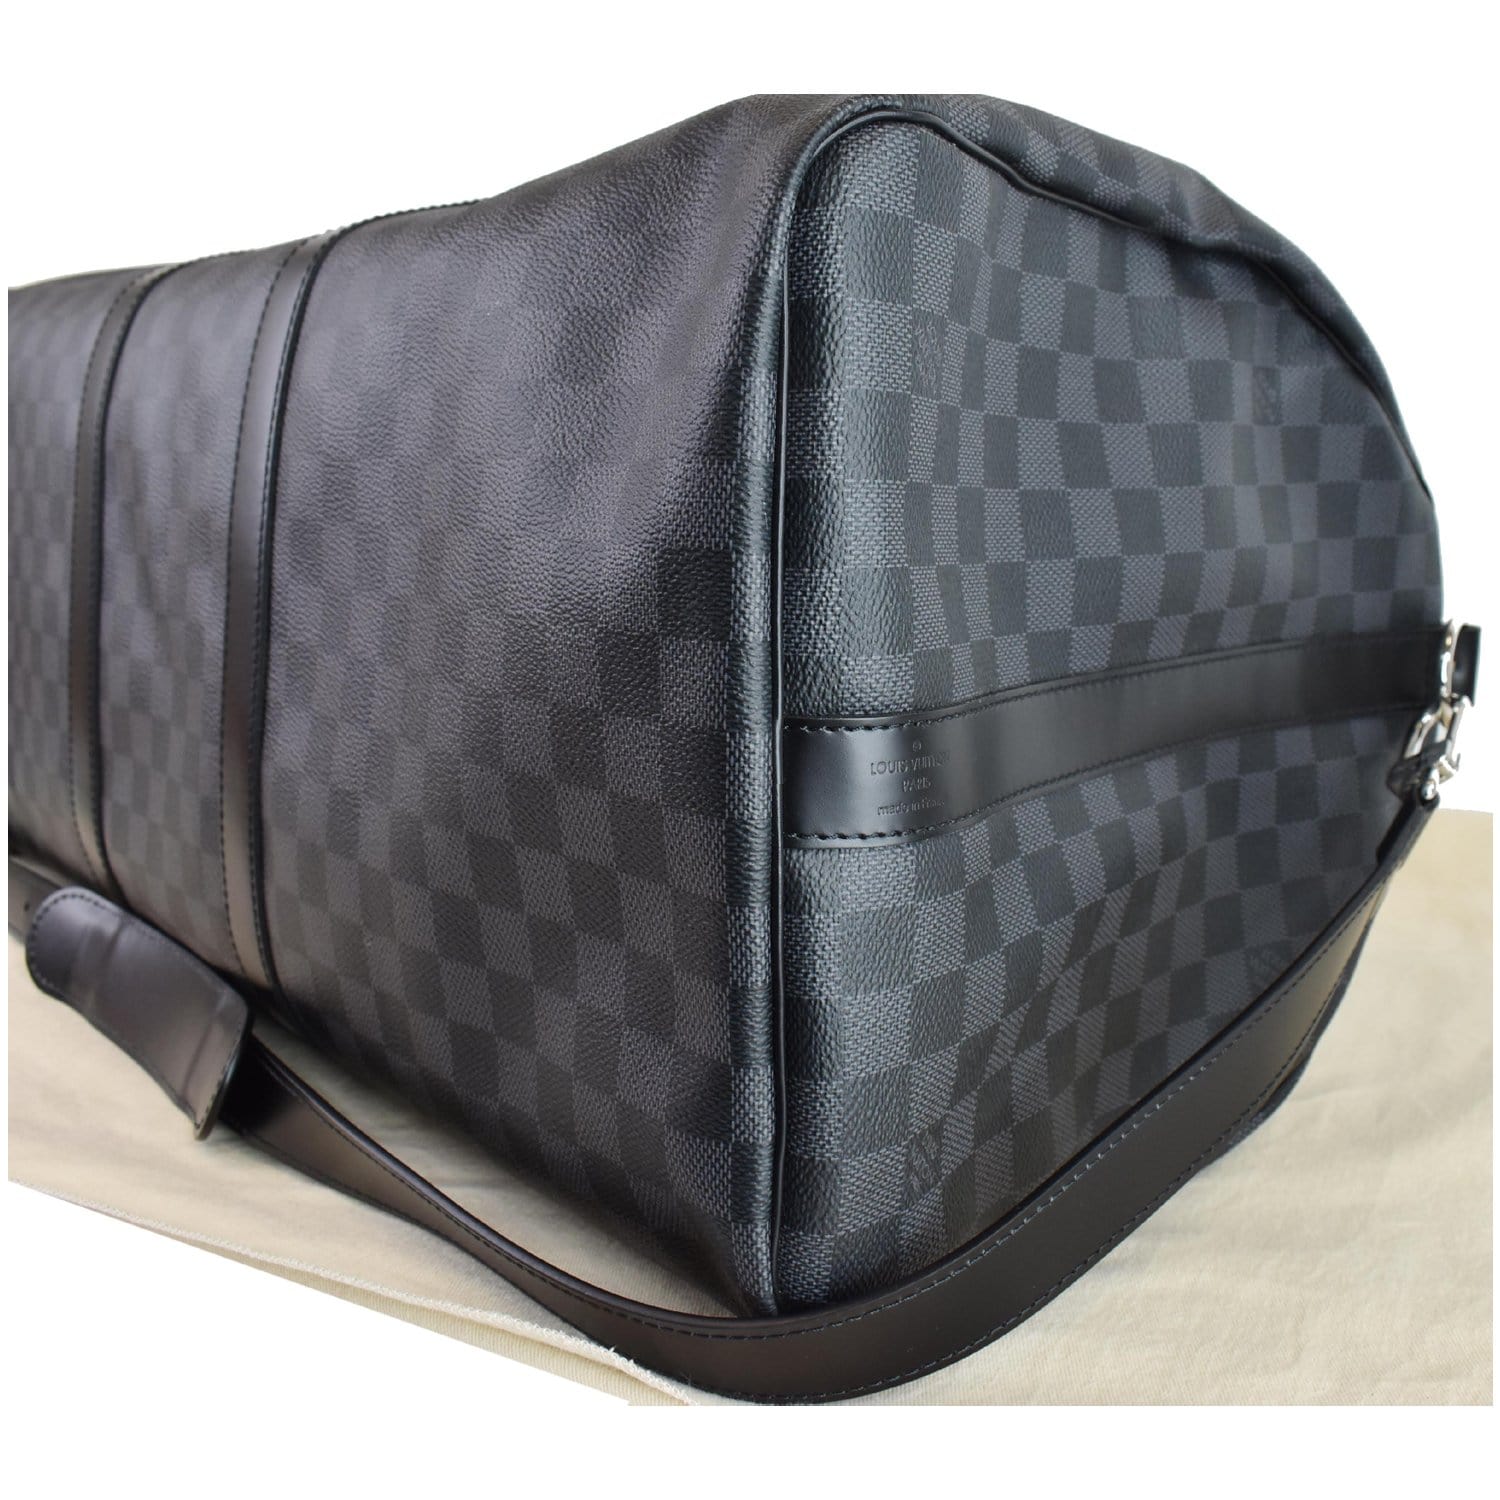 Keepall Bandoulière 55 - Luxury Travel Bags - Travel, Men N41413